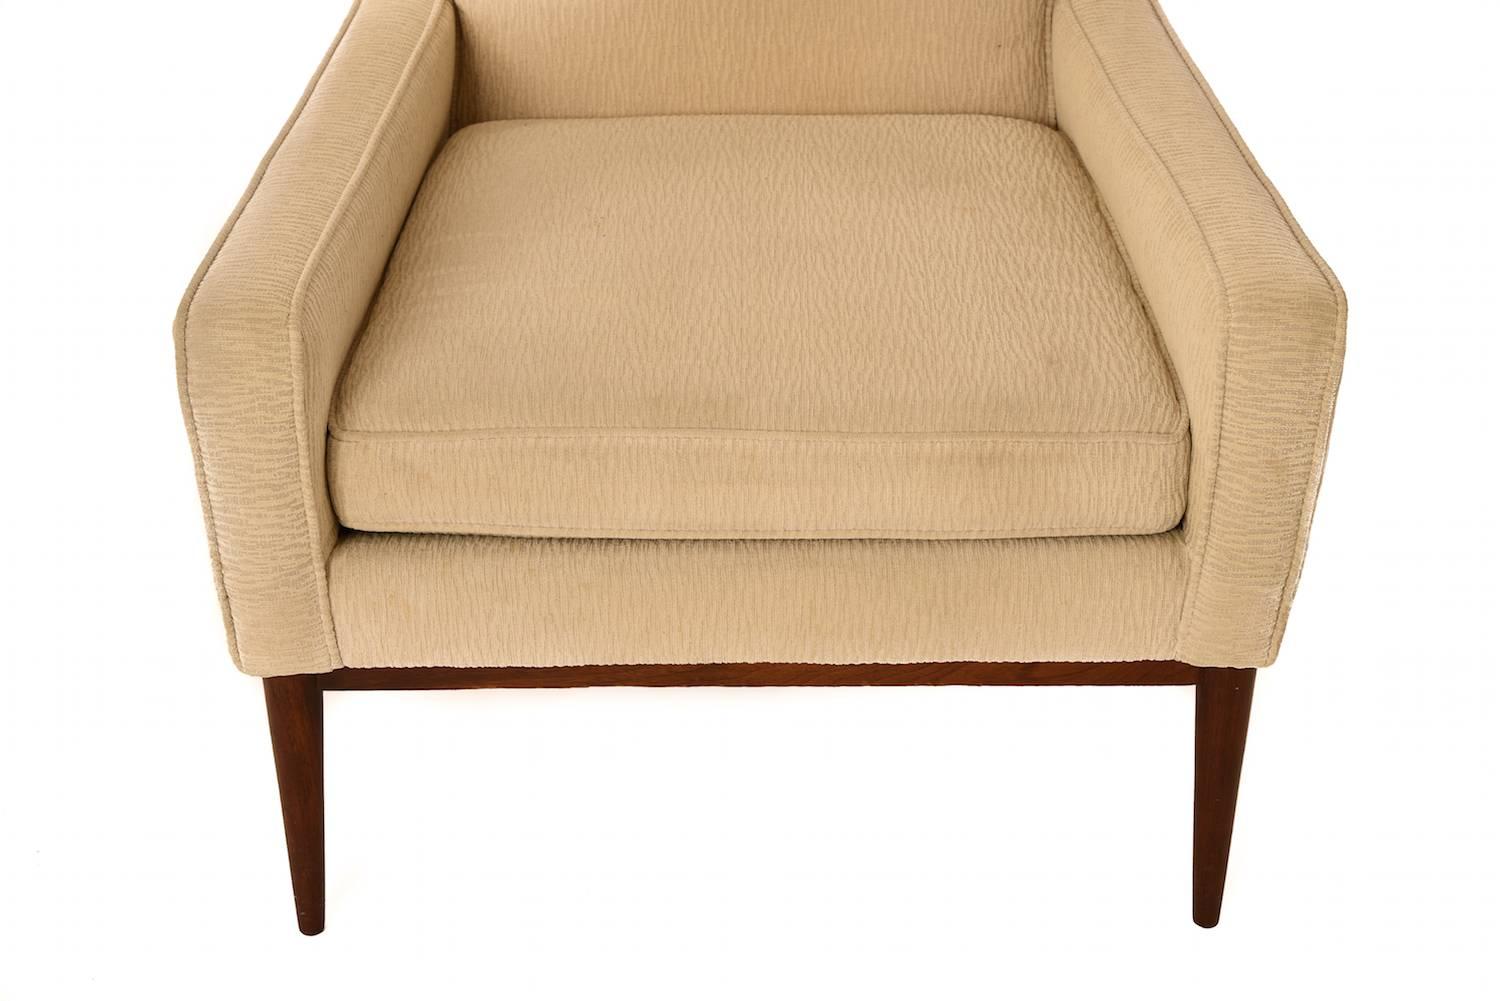 Fabelhafter Vintage-Sessel, entworfen von Paul McCobb. Beine und Details aus Nussbaum. Neupolsterung empfohlen. Bitte erkundigen Sie sich nach den Polstermöglichkeiten.

  